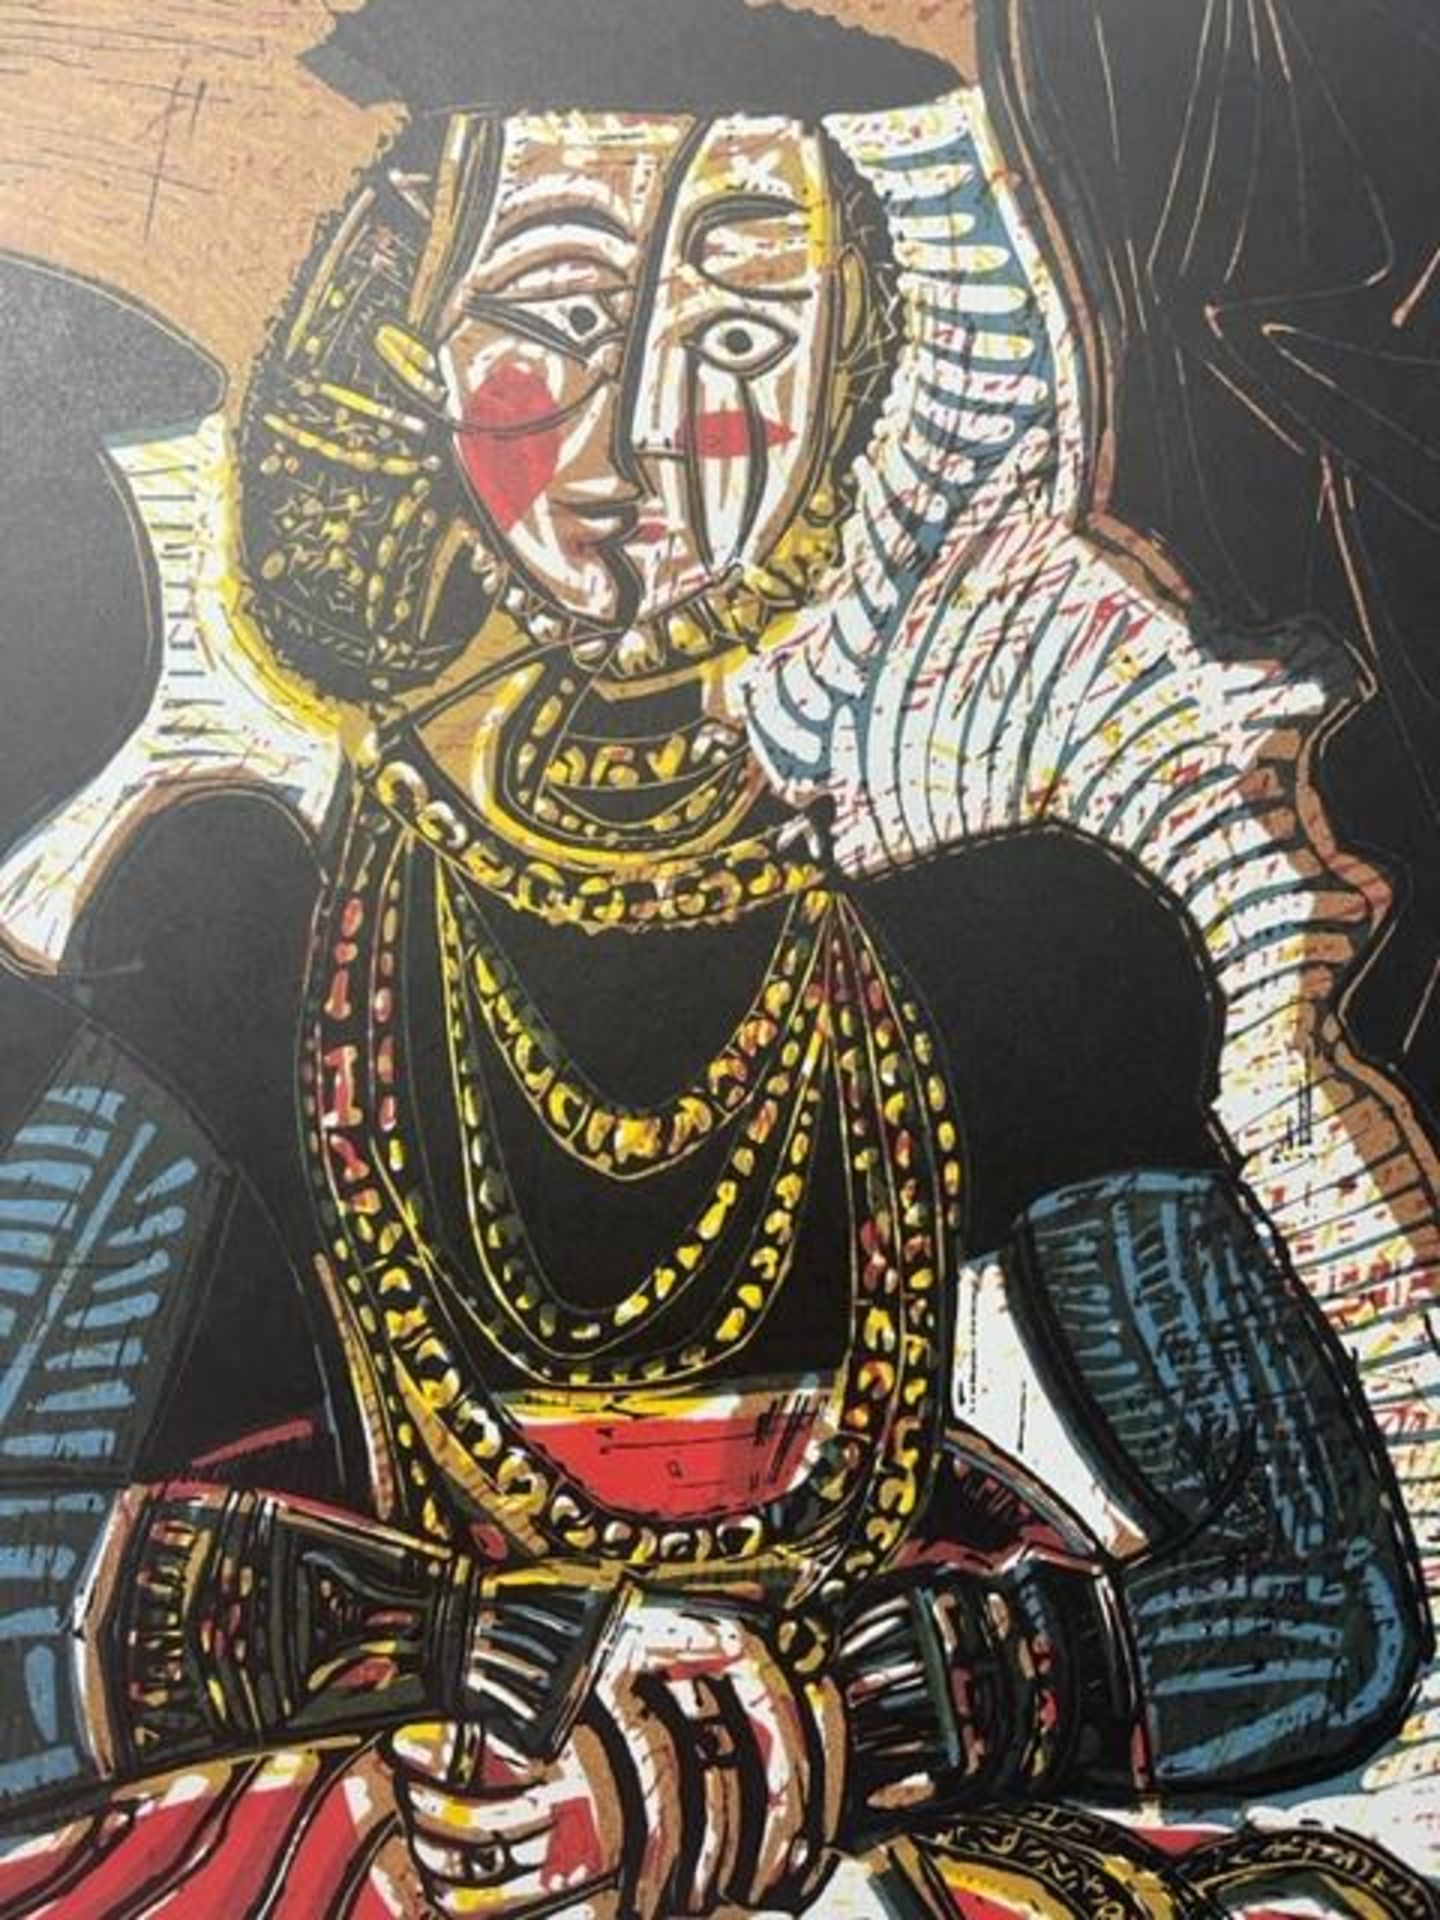 Pablo Picasso "Portrait of a Lady" Print. - Bild 2 aus 6